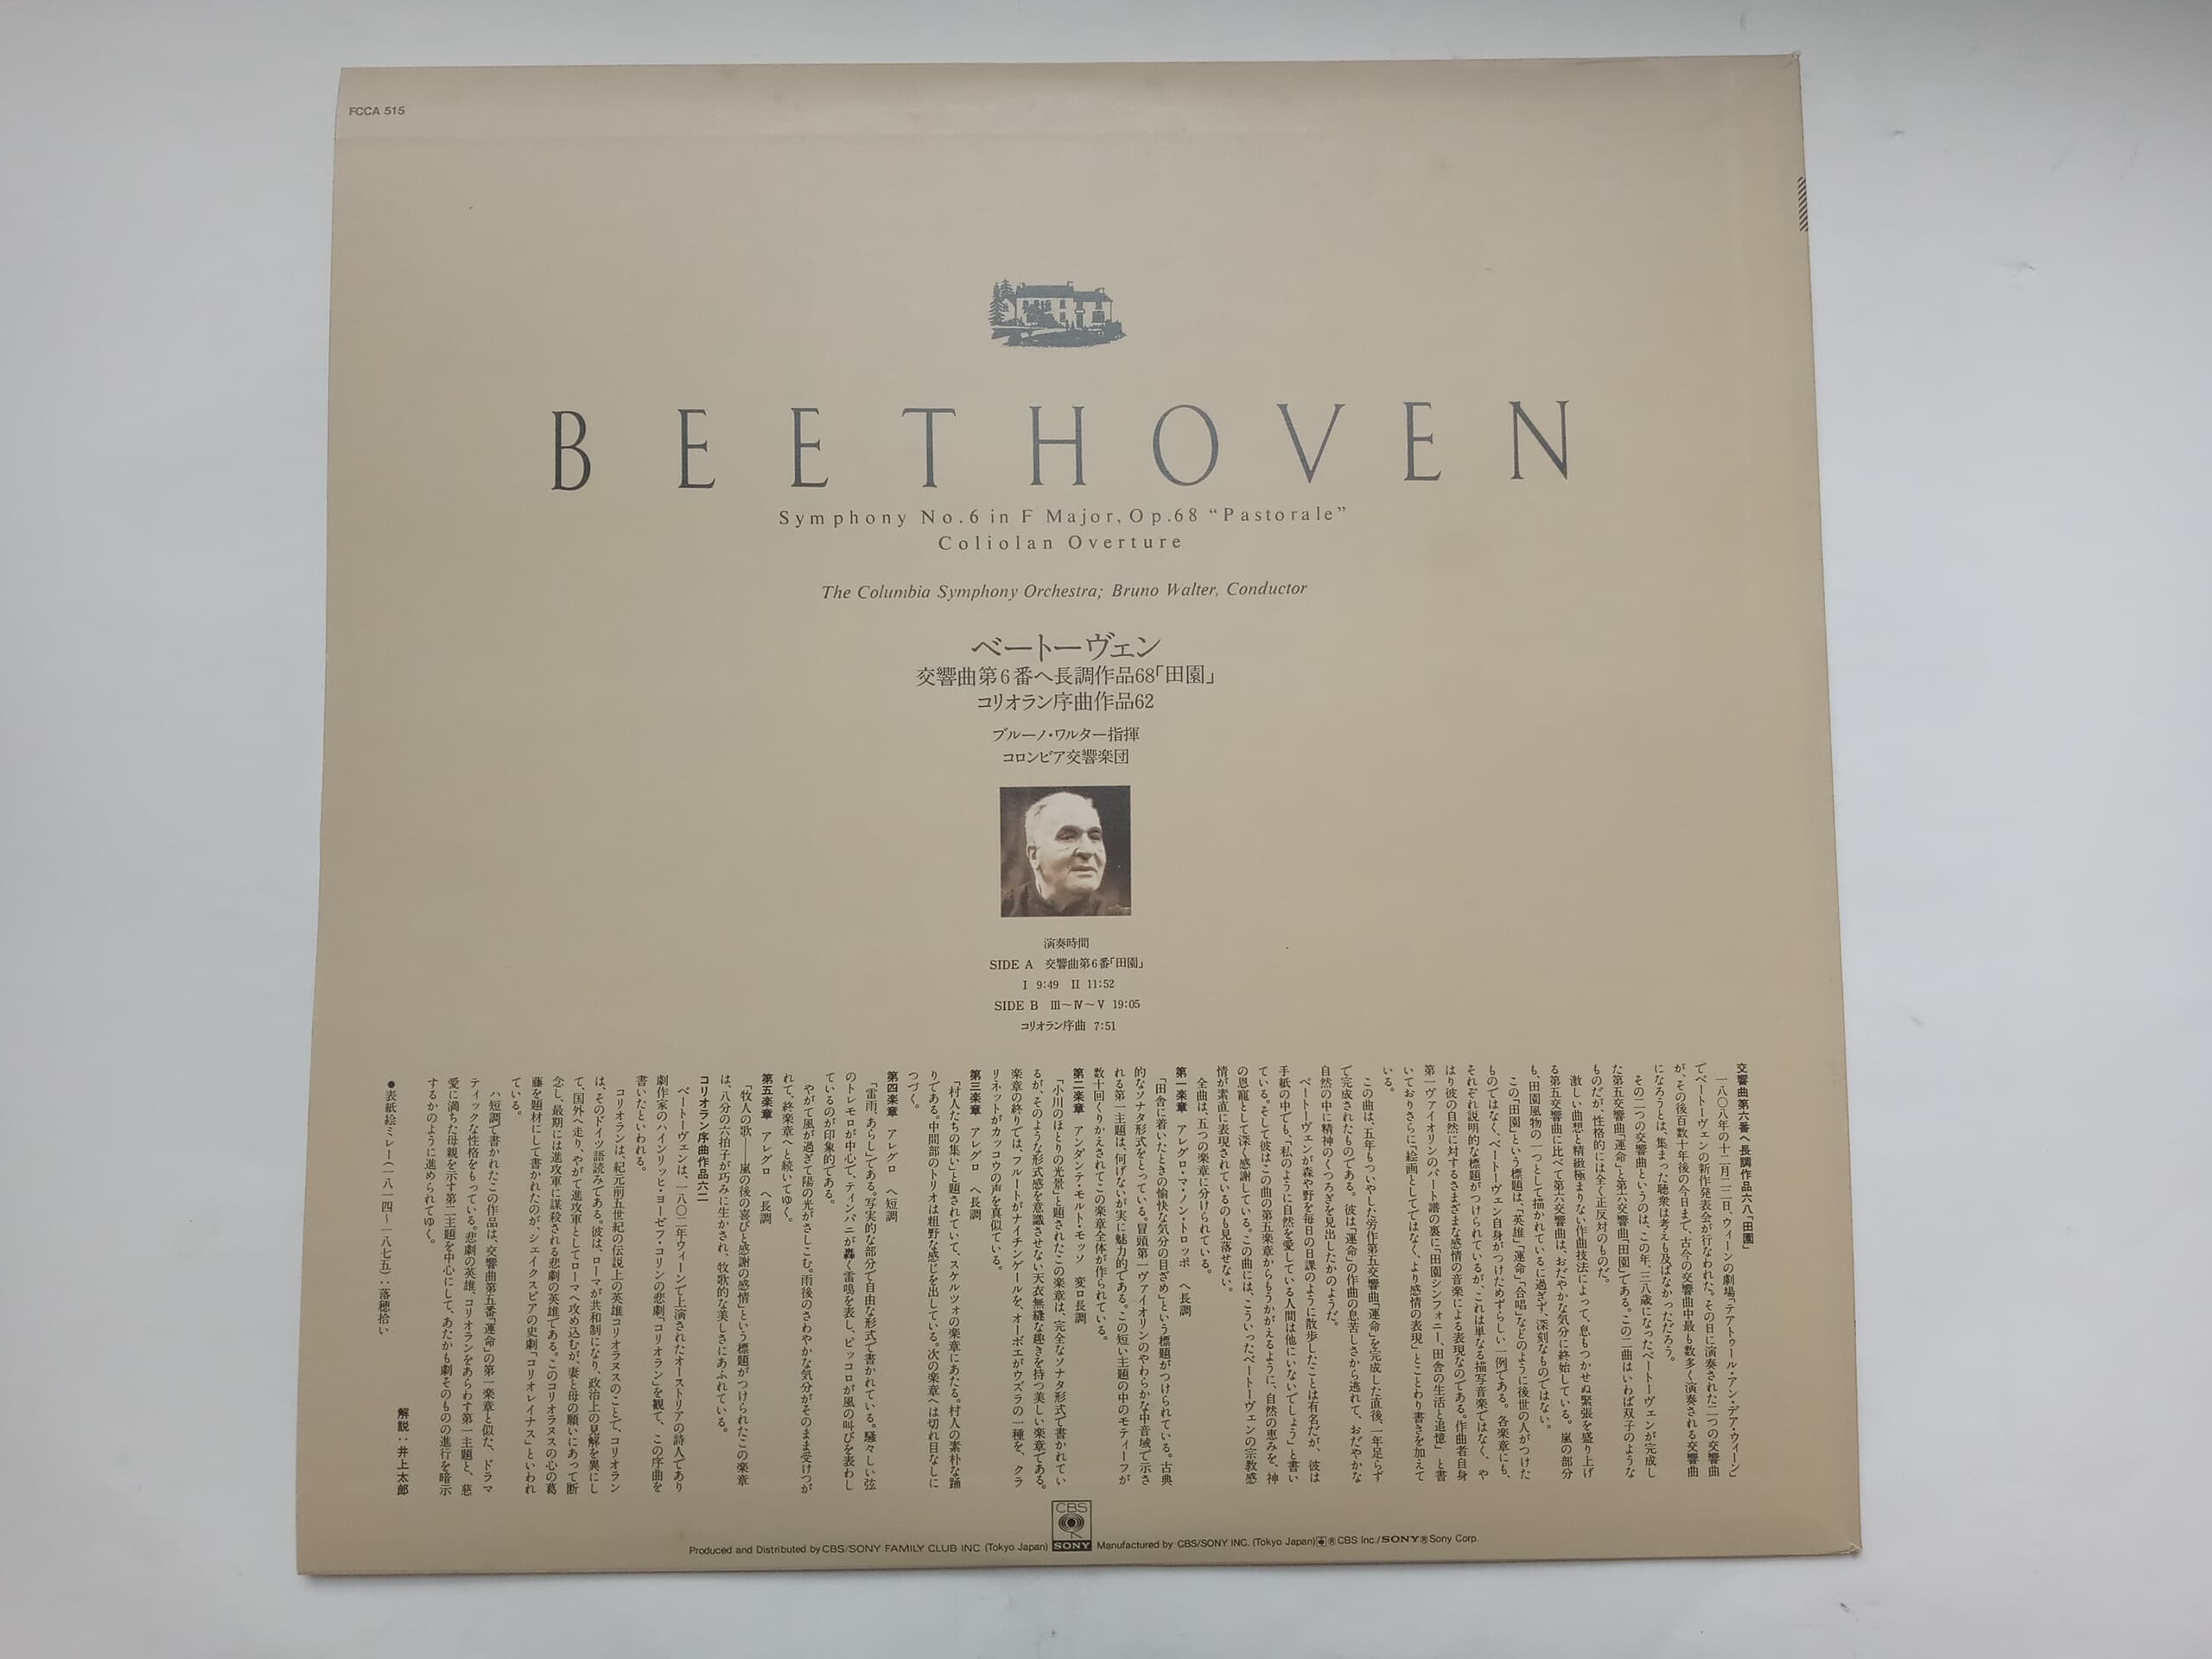 LP(수입) 베토벤 : 교향곡 6번 전원, 코리올란 서곡 - 브루노 발터 / 콜럼비아 교향악단